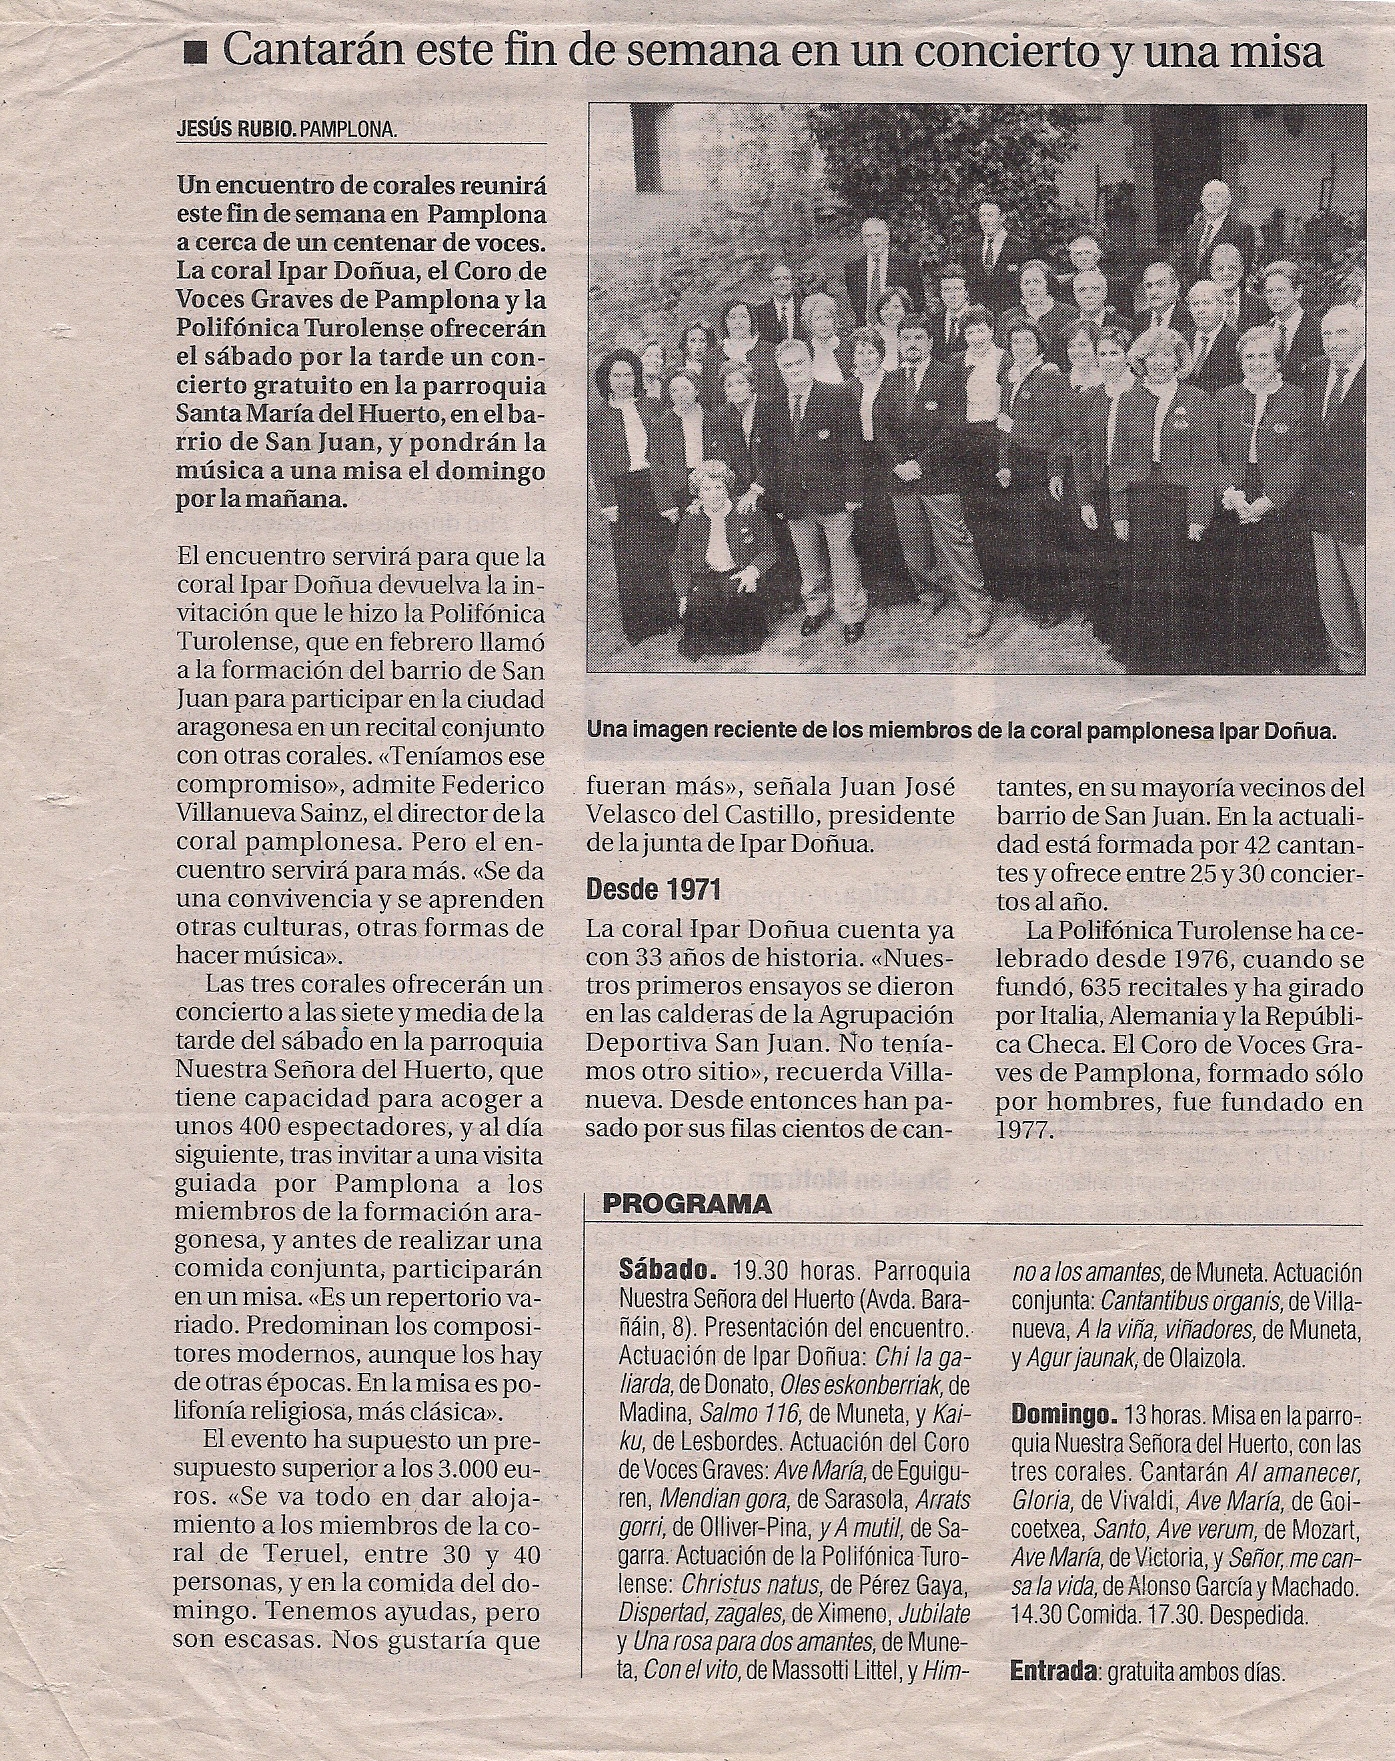 Octubre, 2004. Encuentro coral. Recorte de prensa (Diario de Navarra)